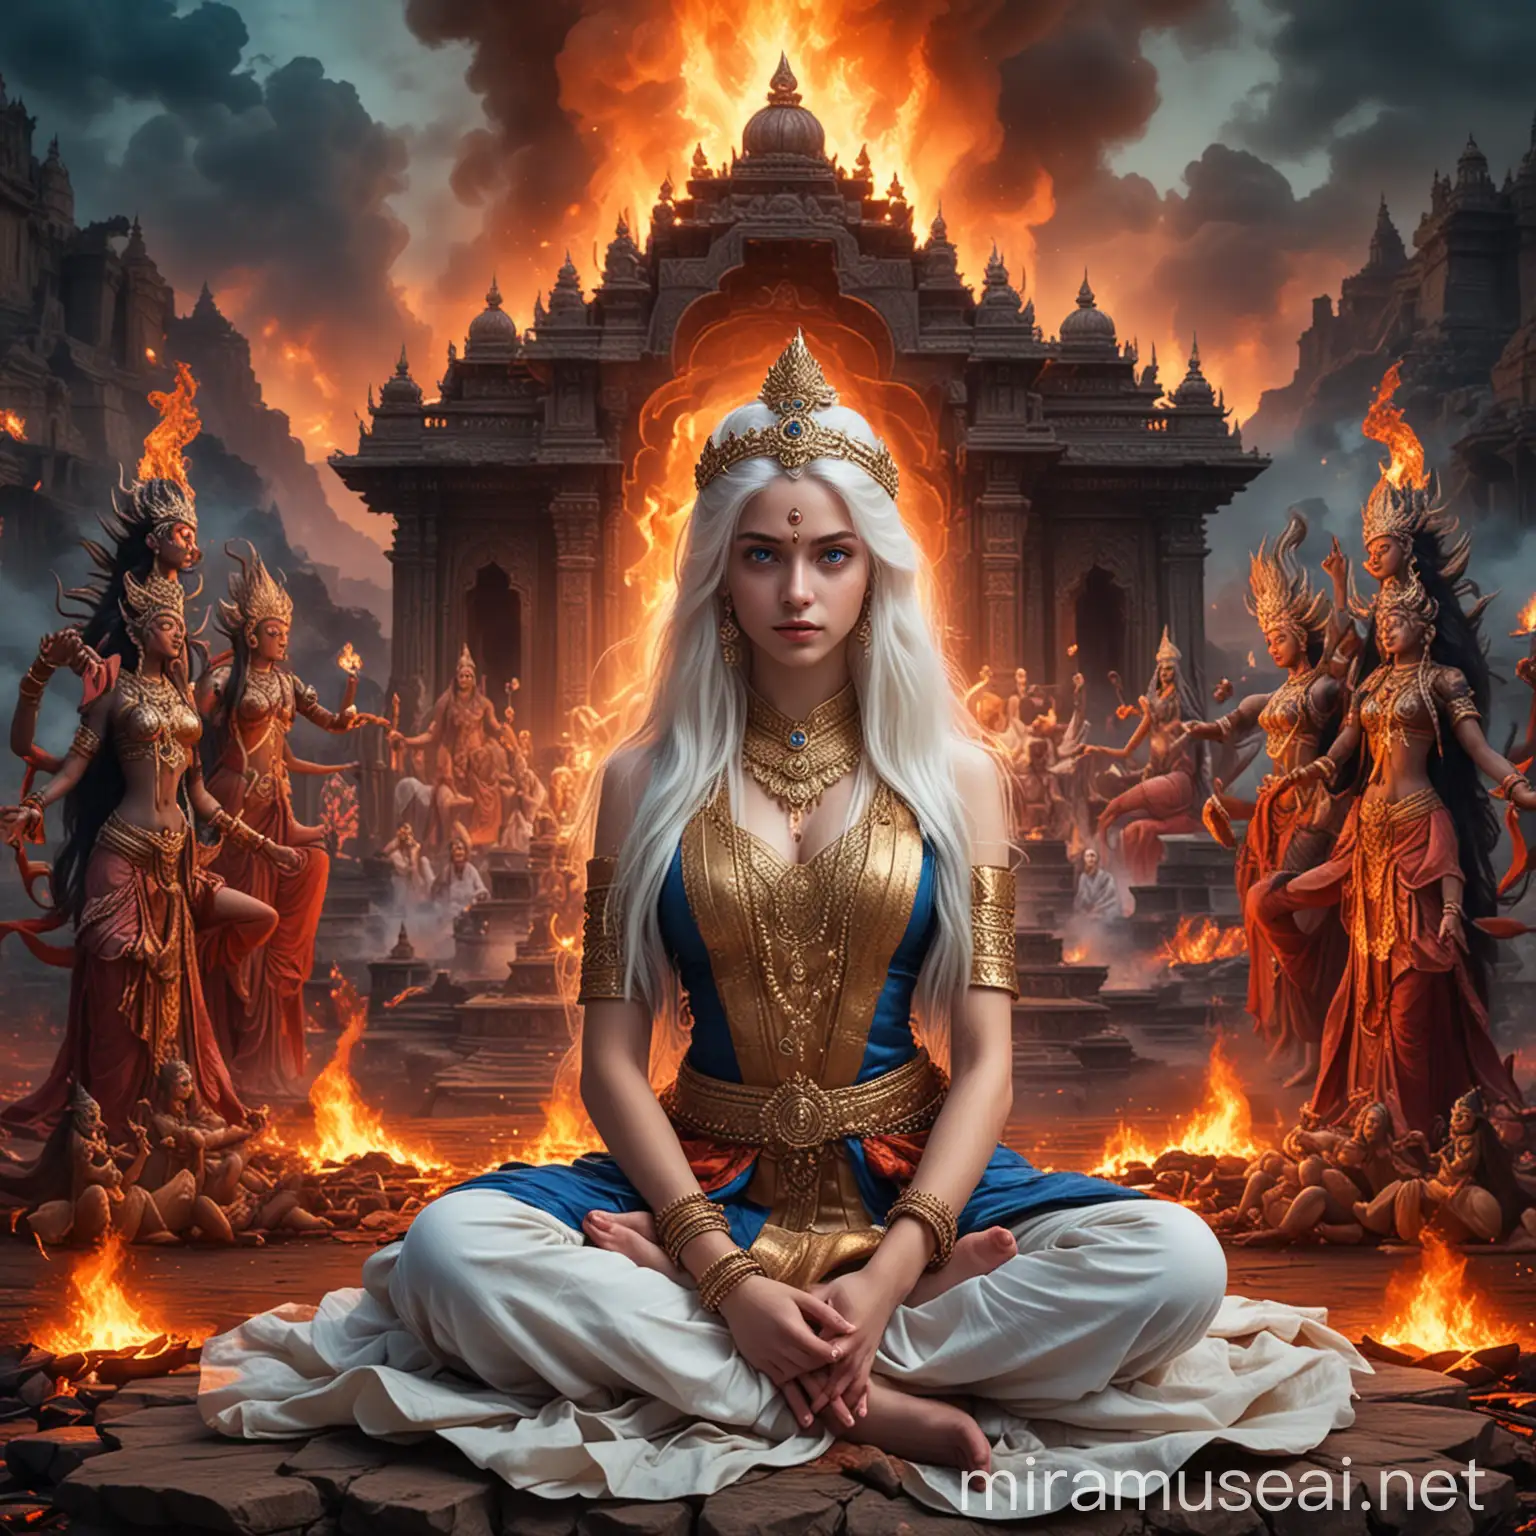 Diosa emperatriz hermosa adolescente de cabellos blancos largos y ojos azules vestida como Diosa emperatriz hindu en combate sentada en posición flor de loto rodeada de fuego y de diosas y dioses hindus demoníacas Sentadas en posición flor de loto y de fondo un gigantesco palacio hindu tenebroso y un valle tenebroso 